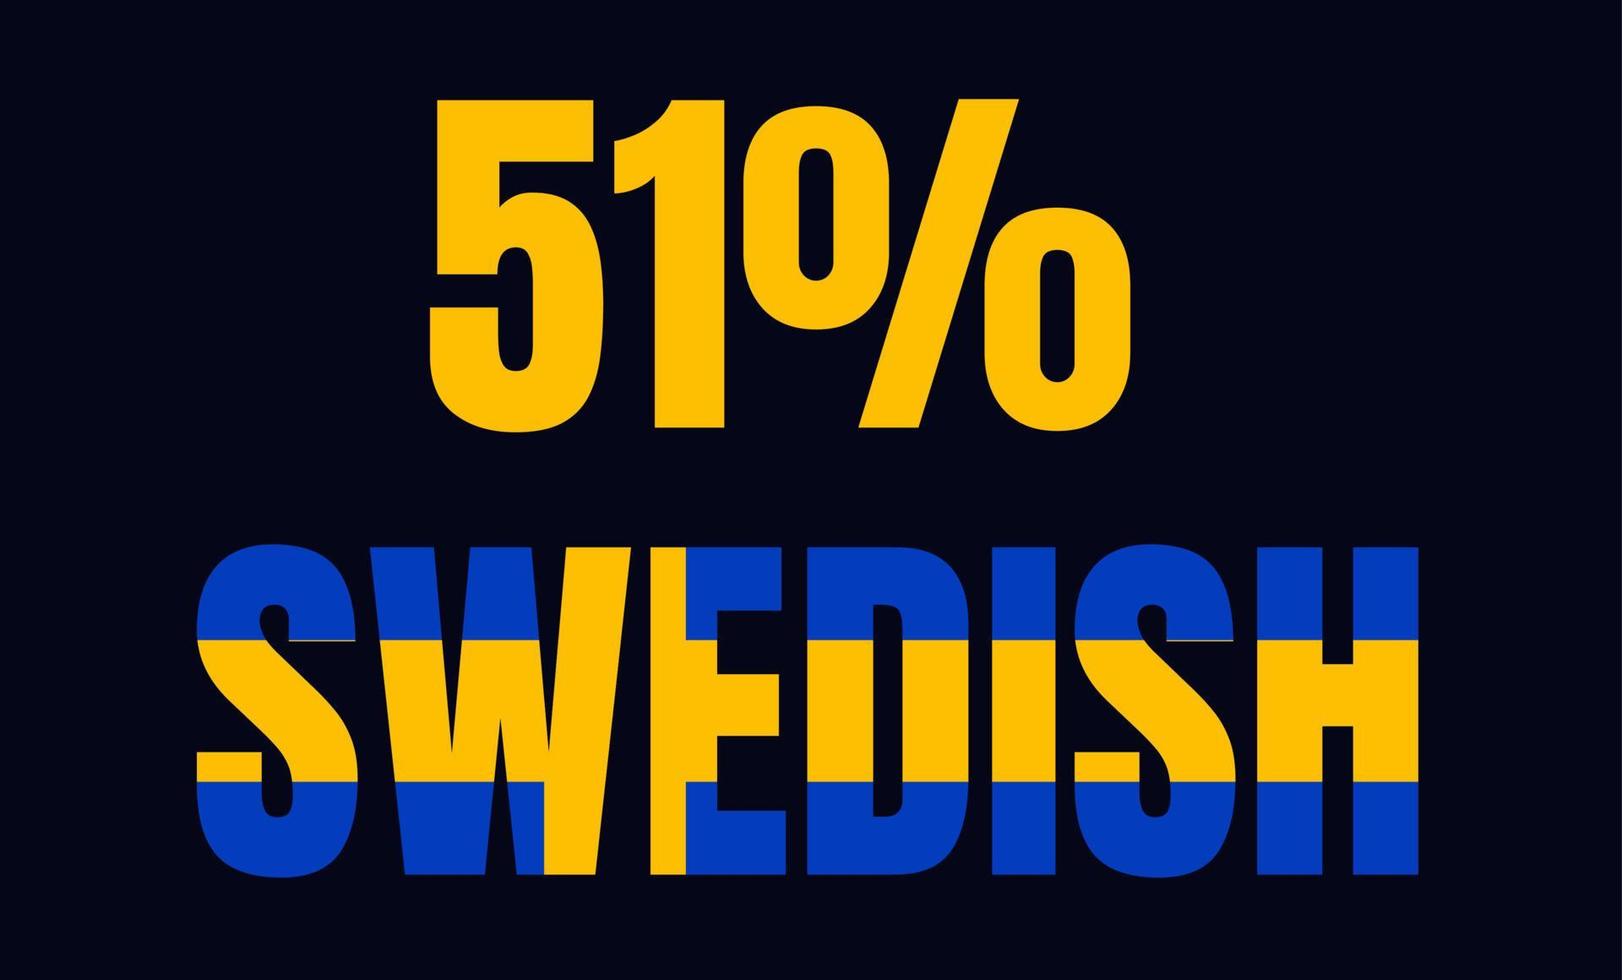 51 procent svensk skyltetikett vektor konstillustration med fantastiskt typsnitt och blågul färg